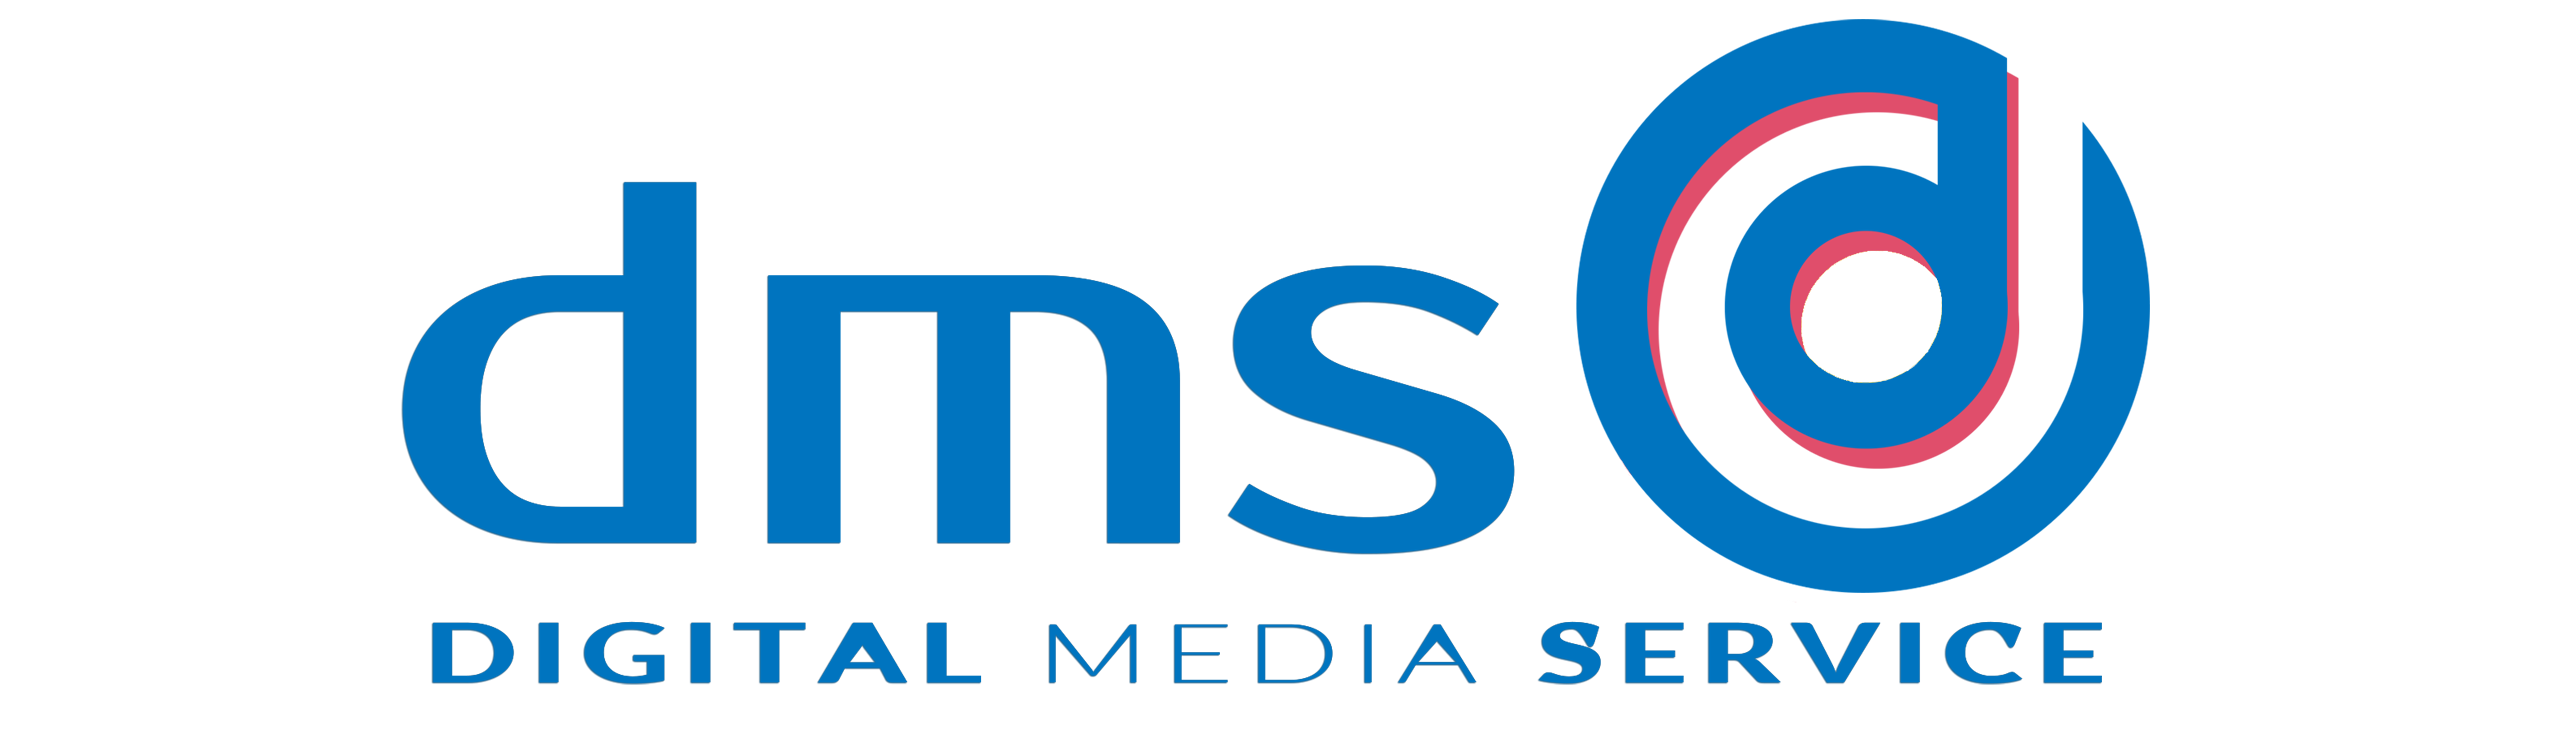 Digital Media Service